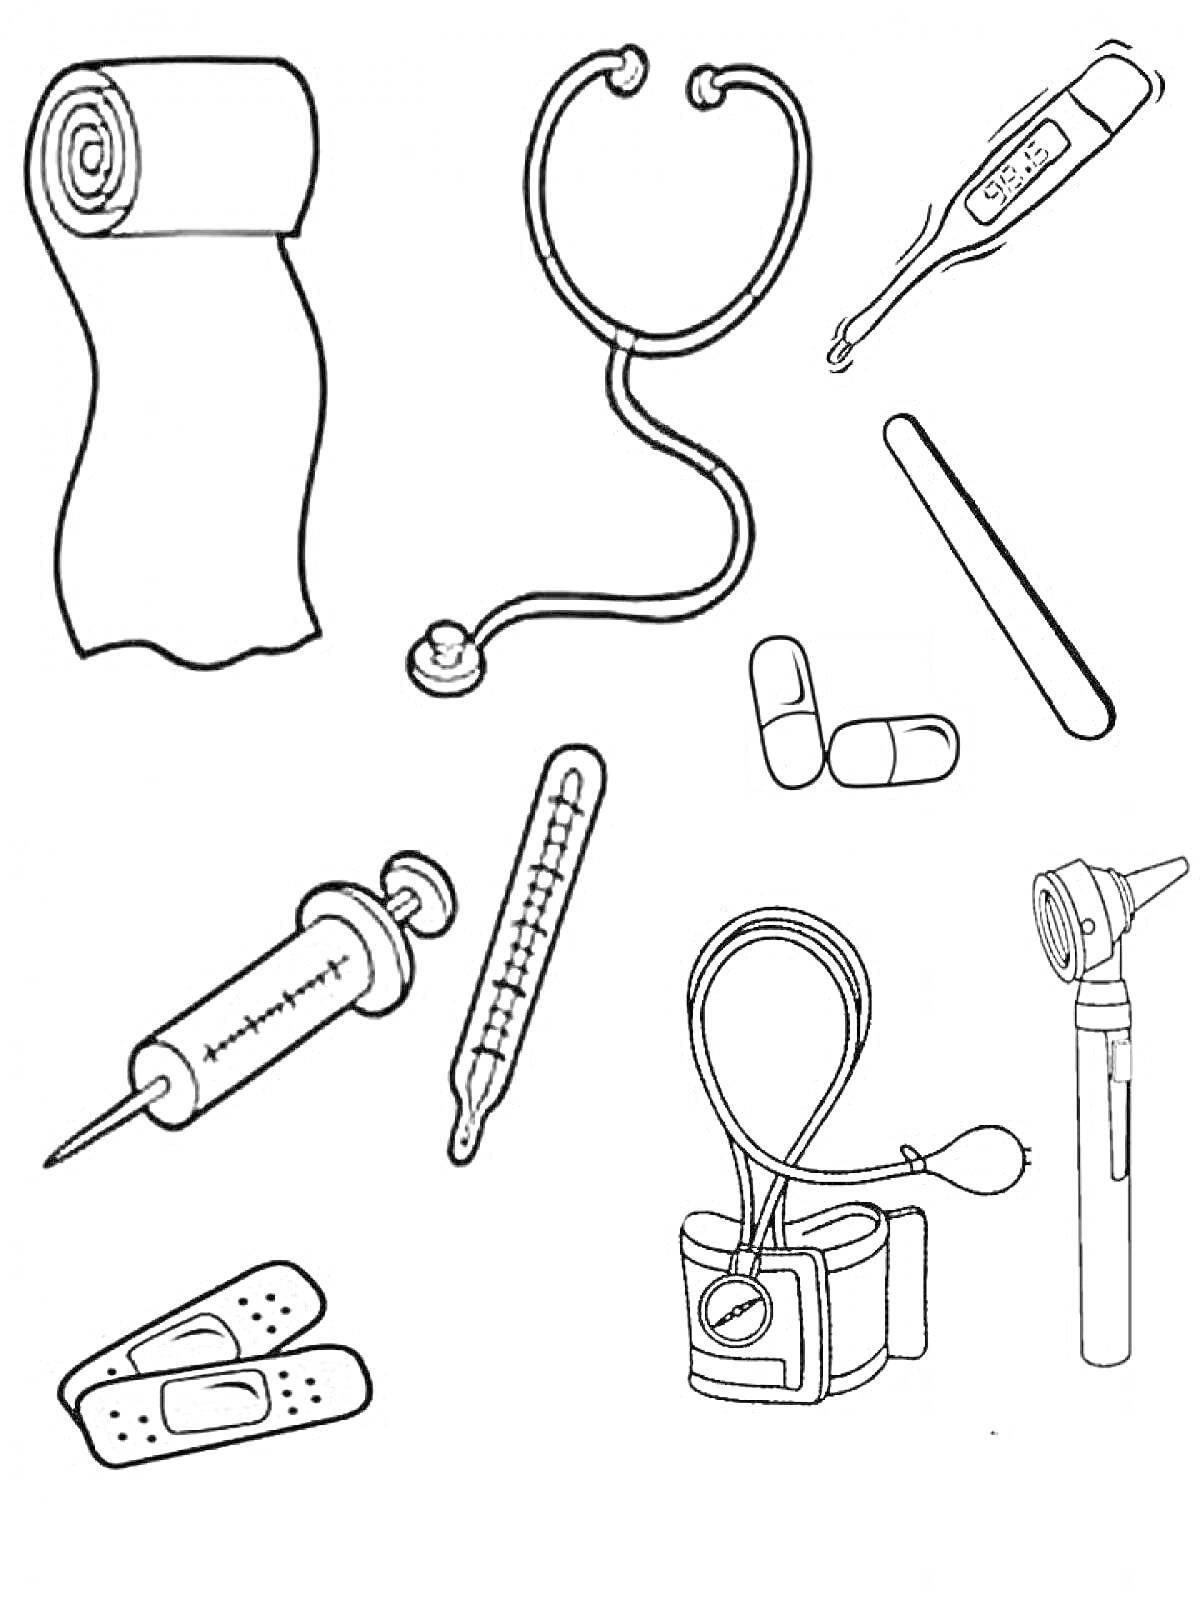 Раскраска Набор доктора с бинтом, стетоскопом, термометром, шприцем, капсулами, лентой для горла и медицинскими инструментами